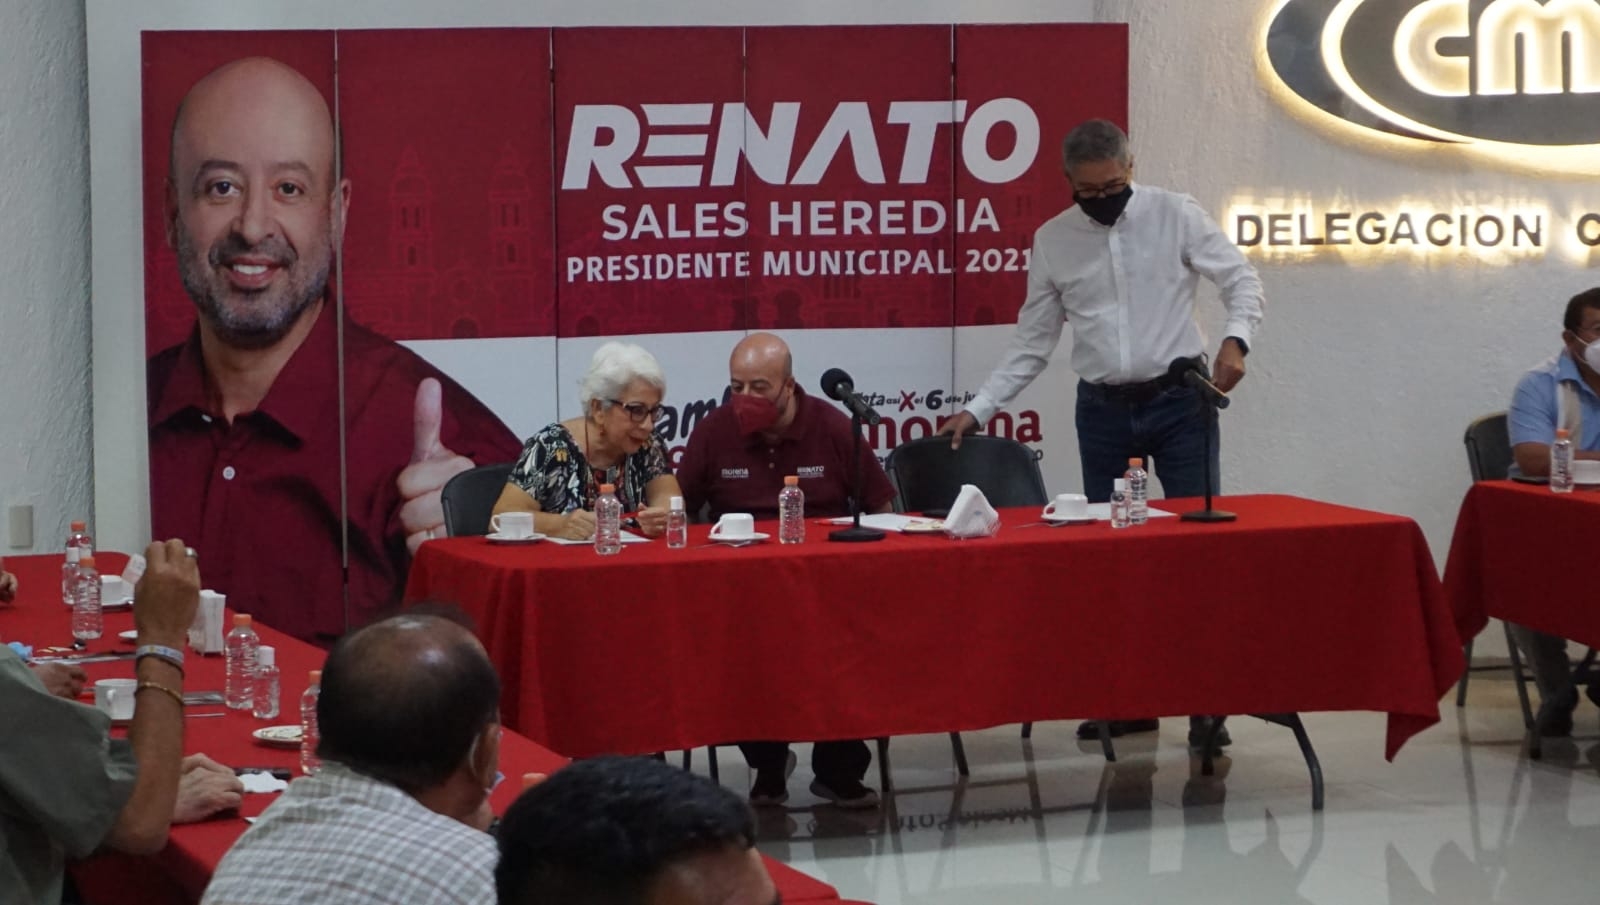 Renato Sales Heredia destacó como una de sus propuestas la importancia de facilitar los requisitos en la comuna para otorgar permisos de construcción